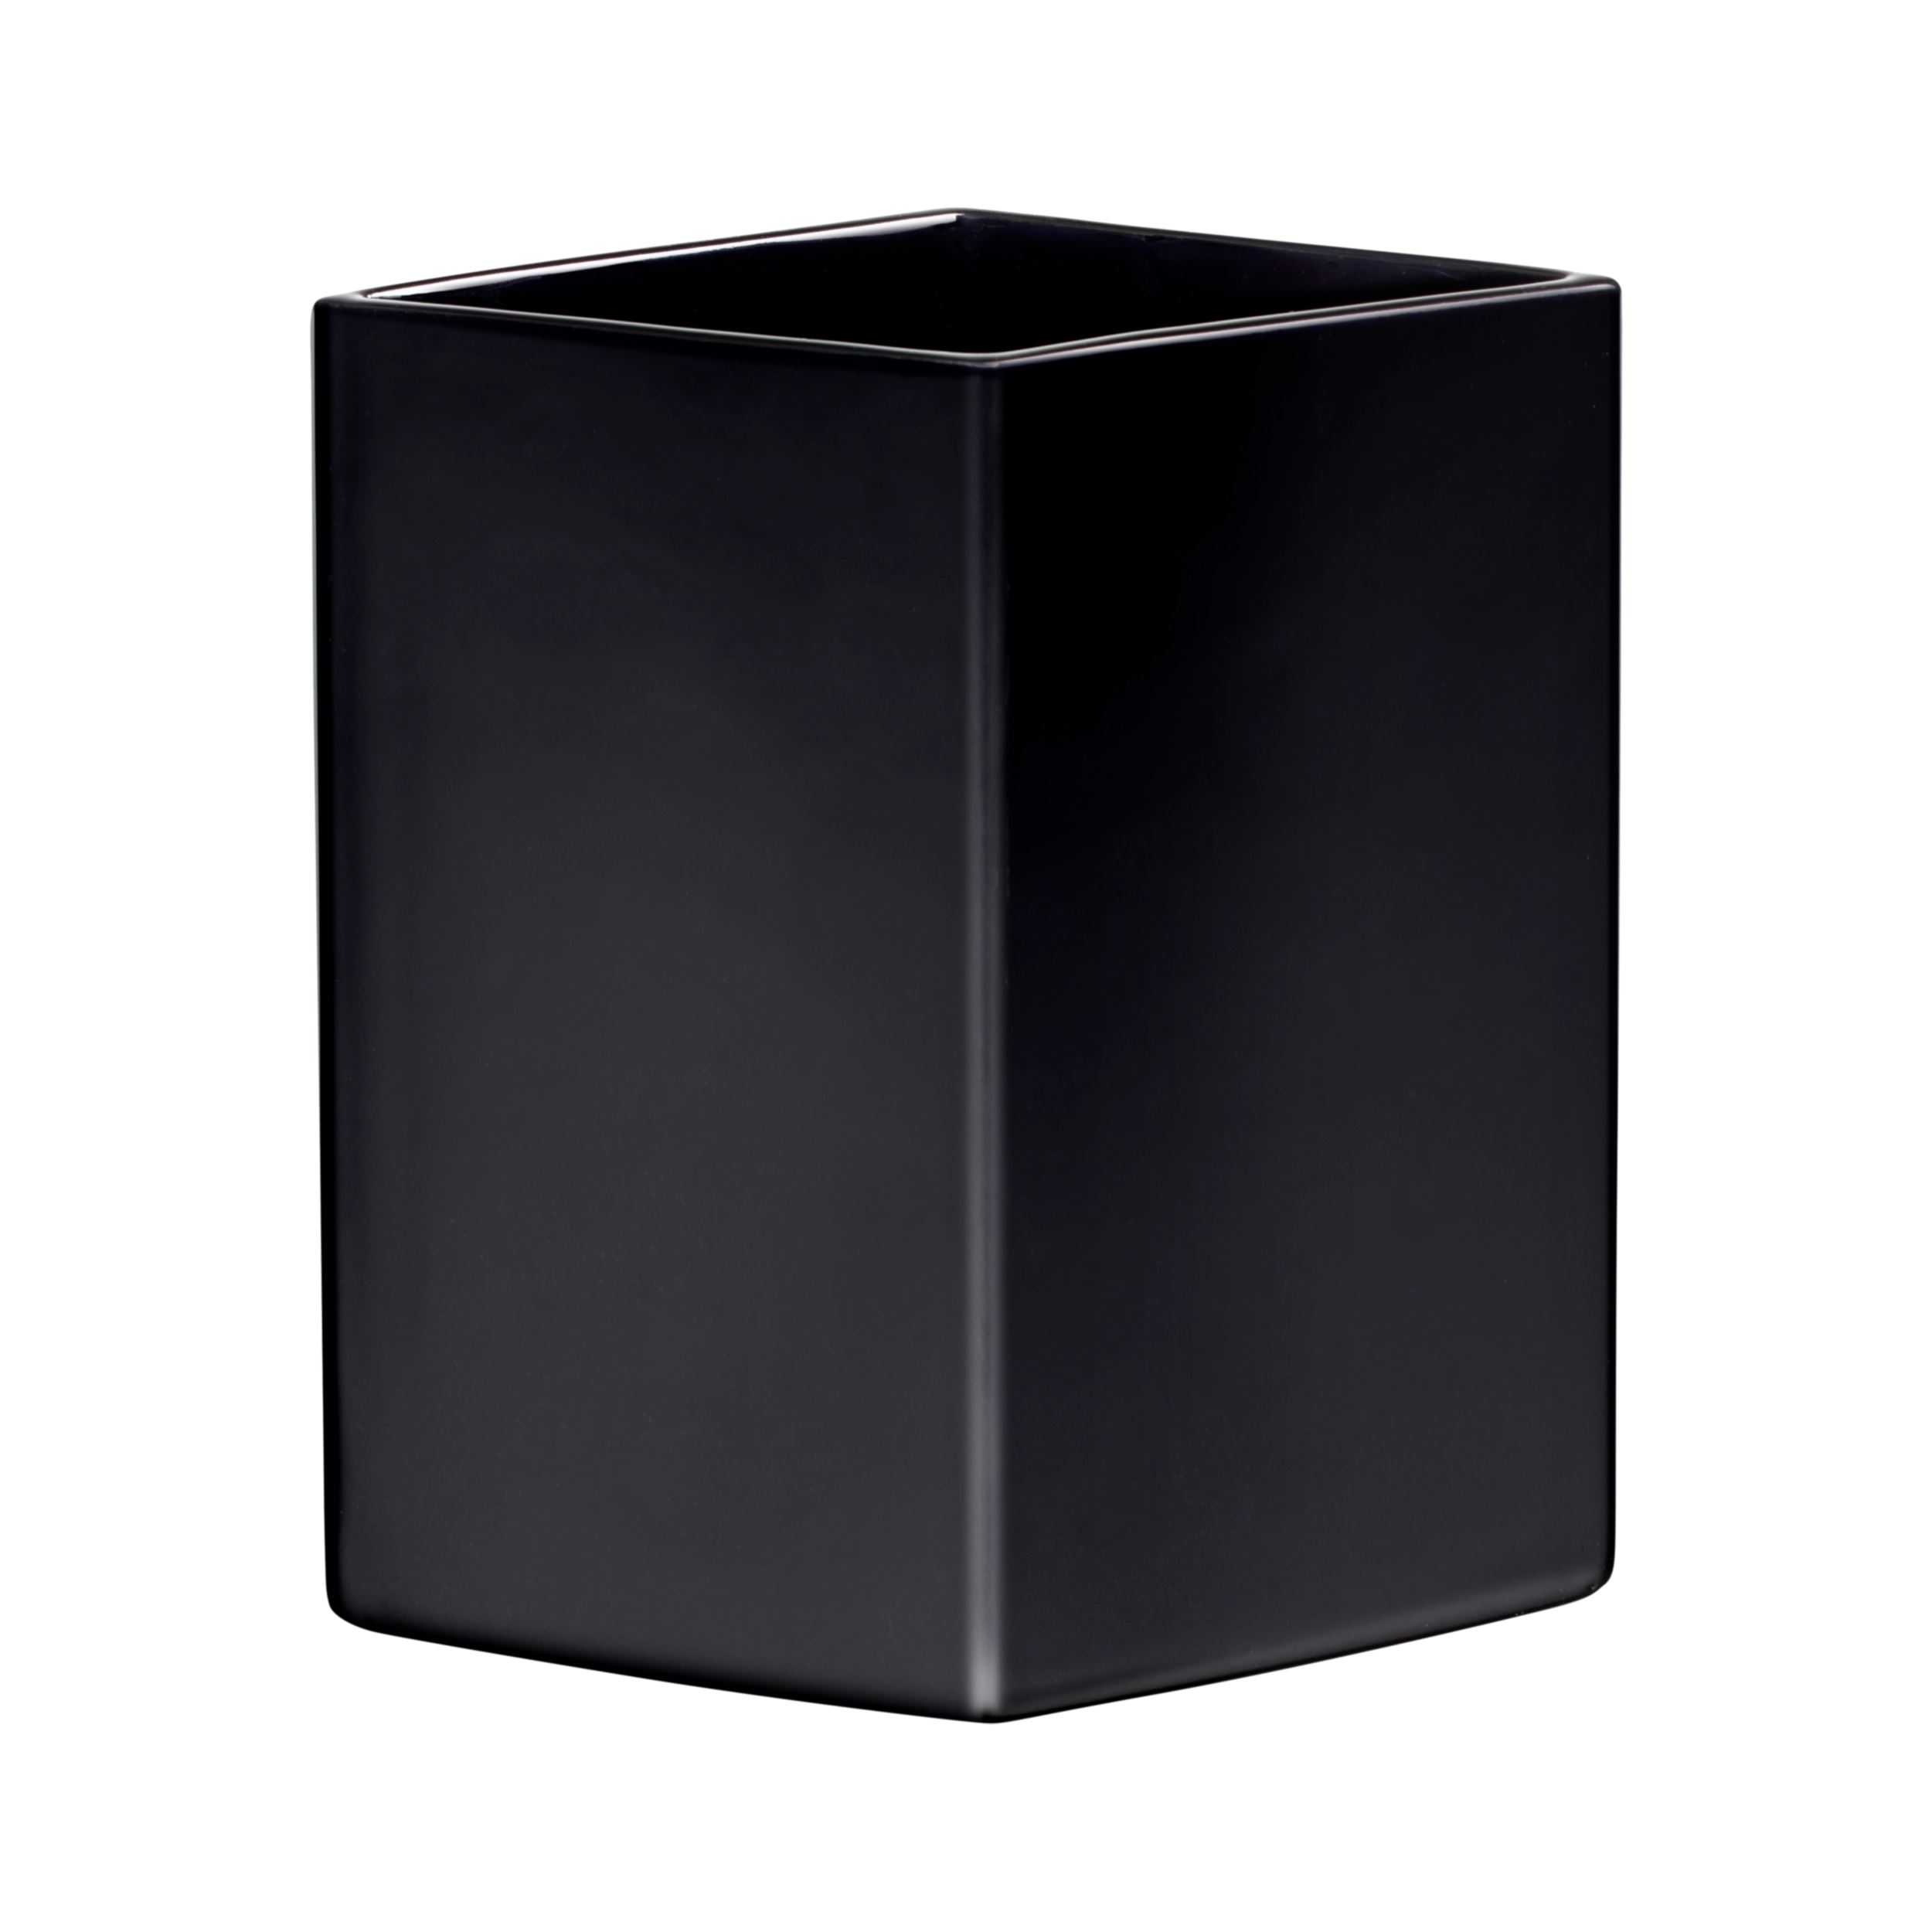 Ruutu ceramic vase 225mm black | Iittala